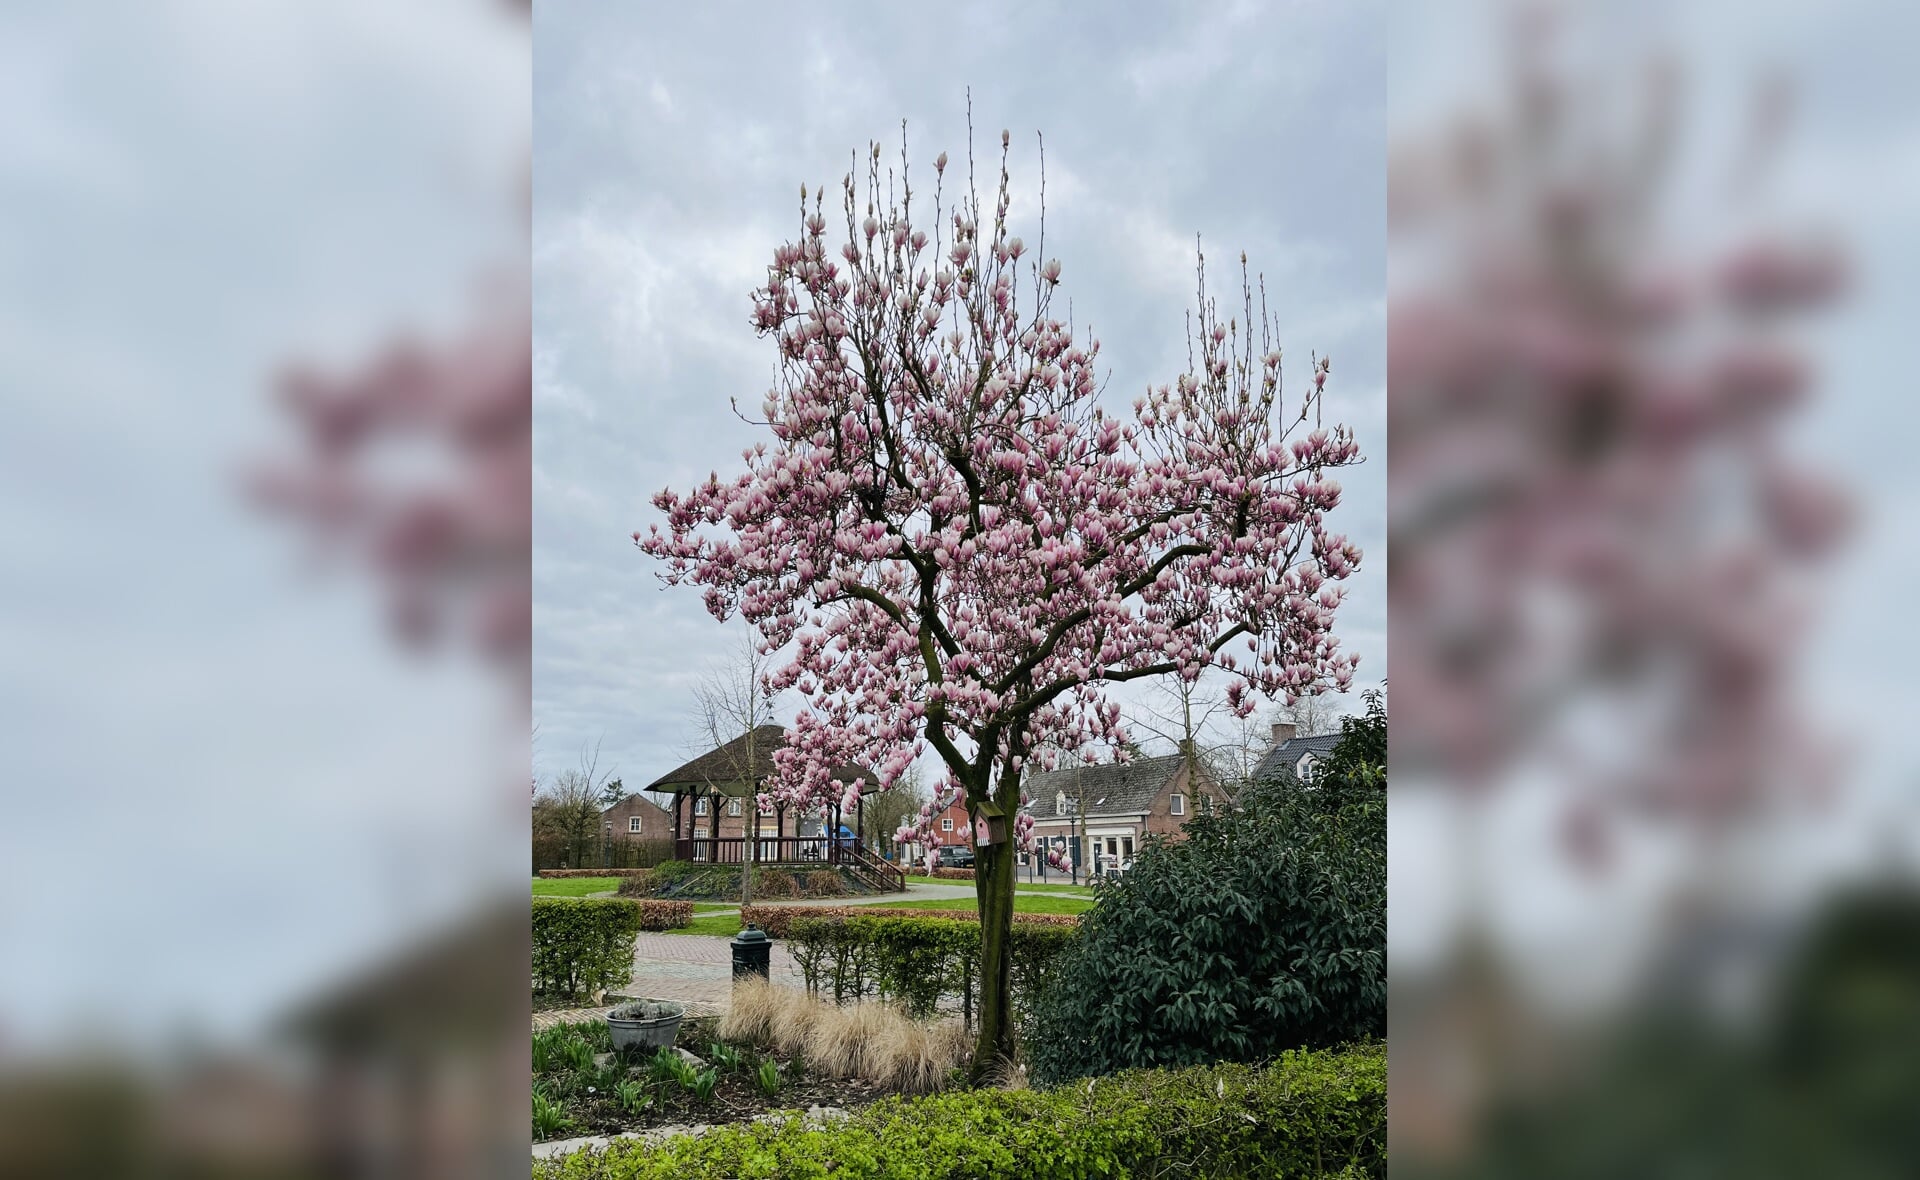 De lente laat zich zien in Liempde. Deze magnolia staat al mooi in bloei naast het Concordiapark in het dorpshart.